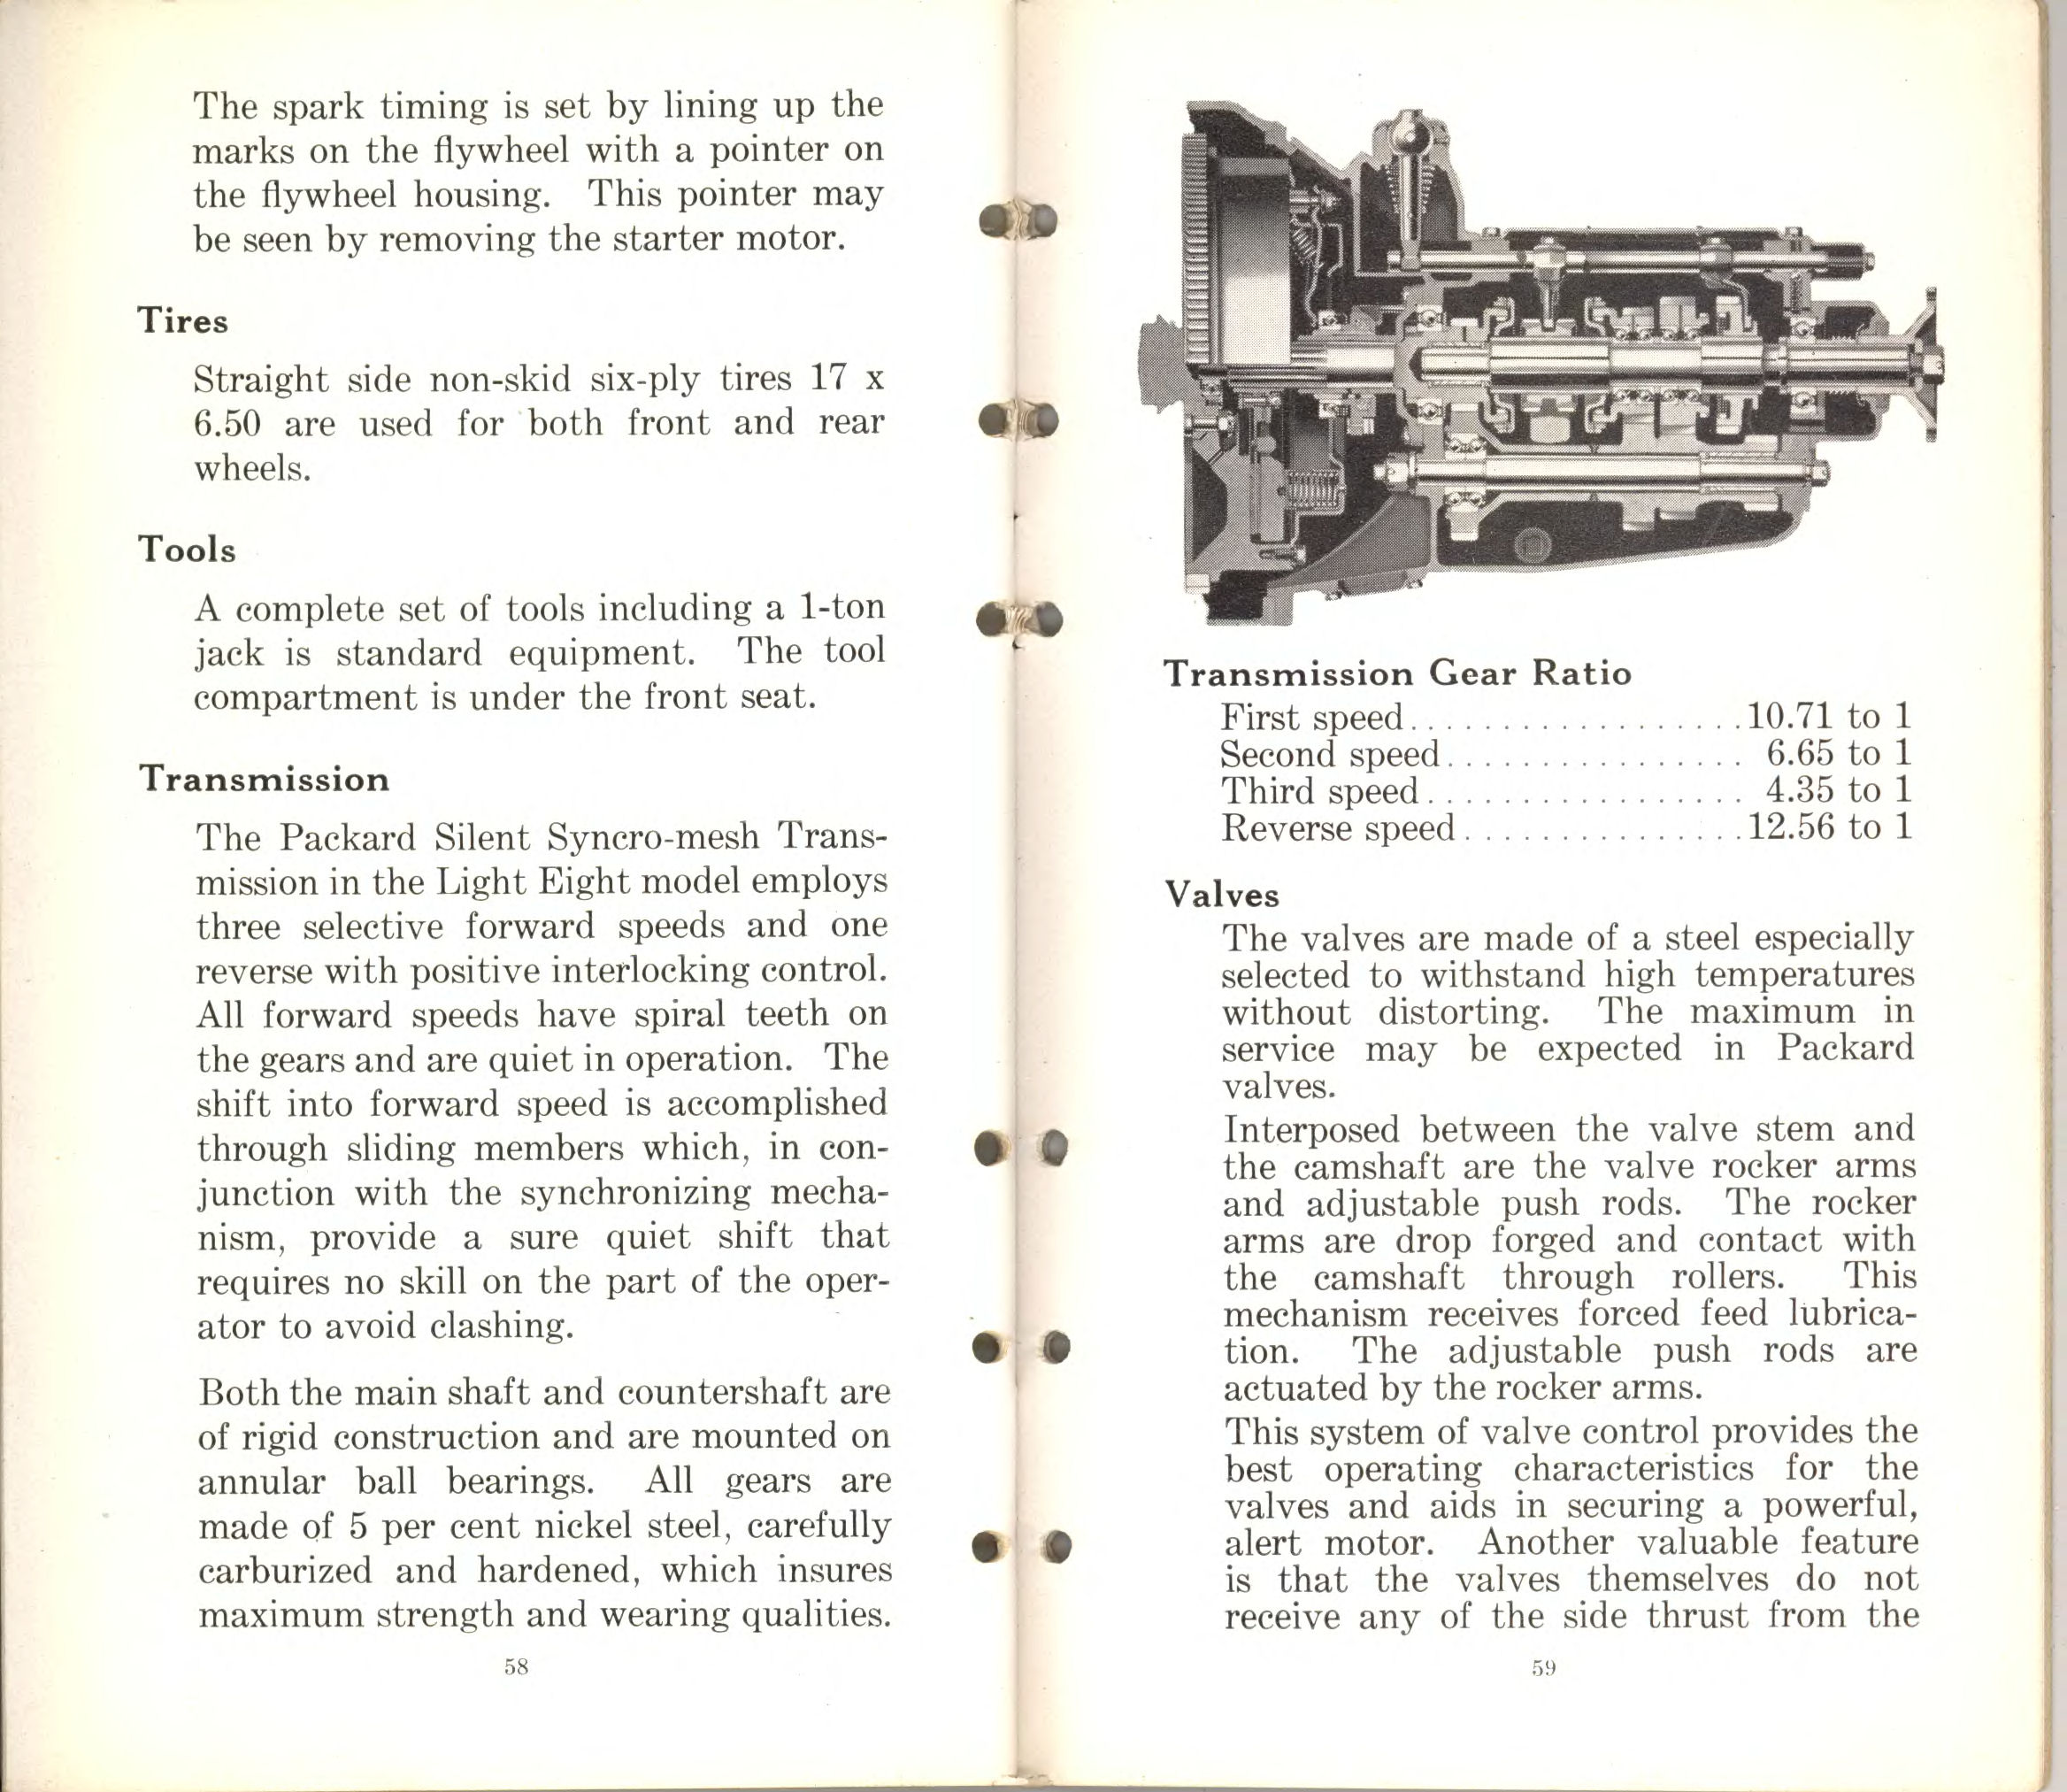 1932_Packard_Light_Eight_Facts_Book-58-59